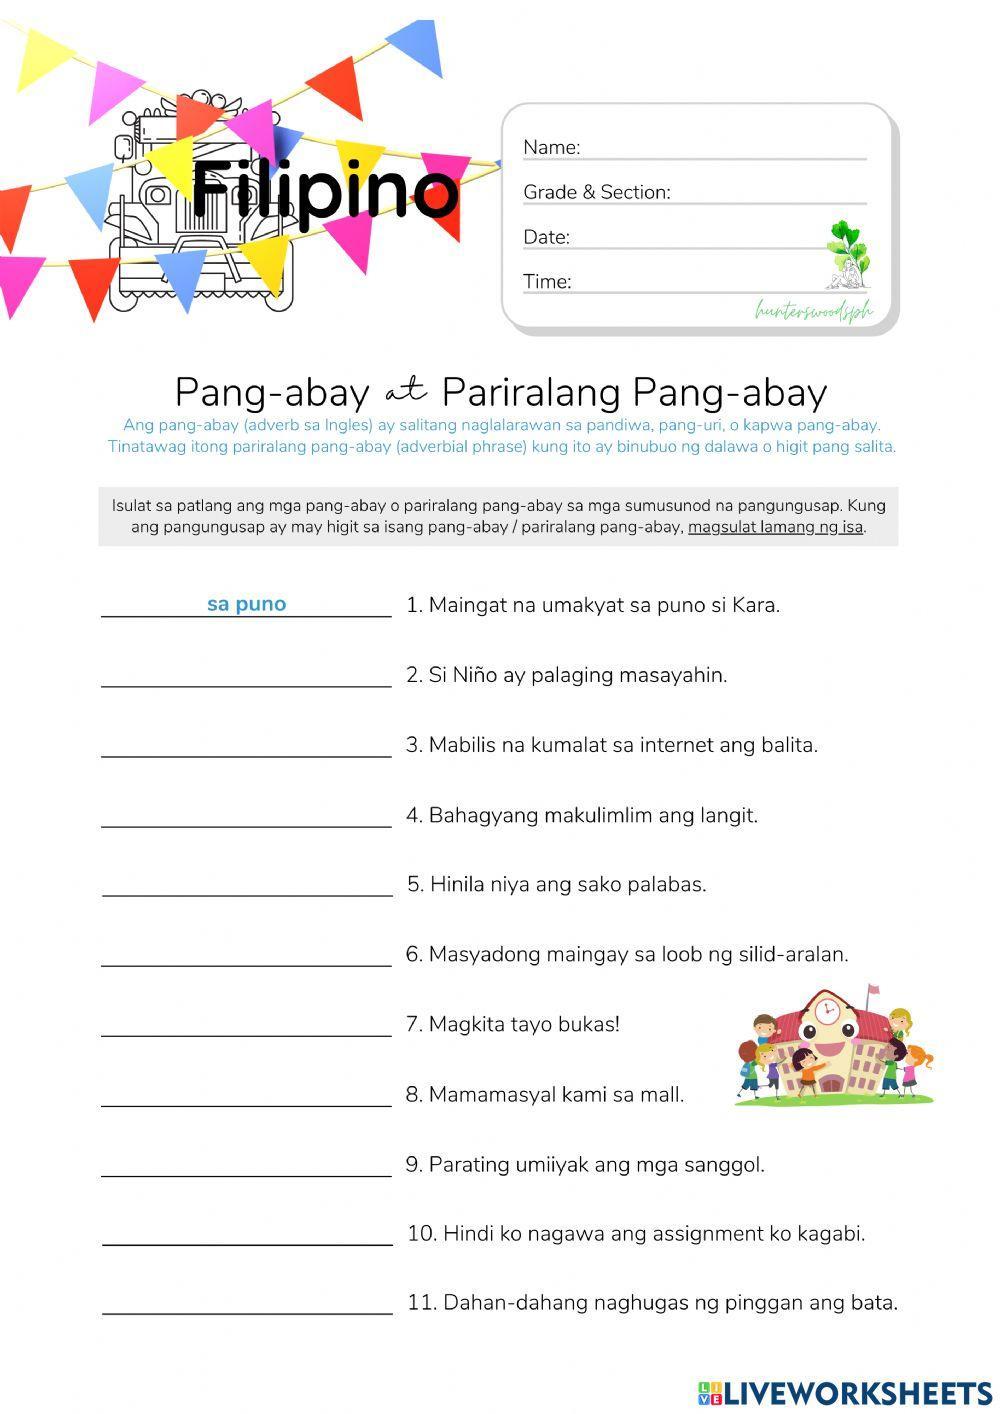 Pang-abay at Pariralang Pang-abay - HuntersWoodsPH.com Worksheet